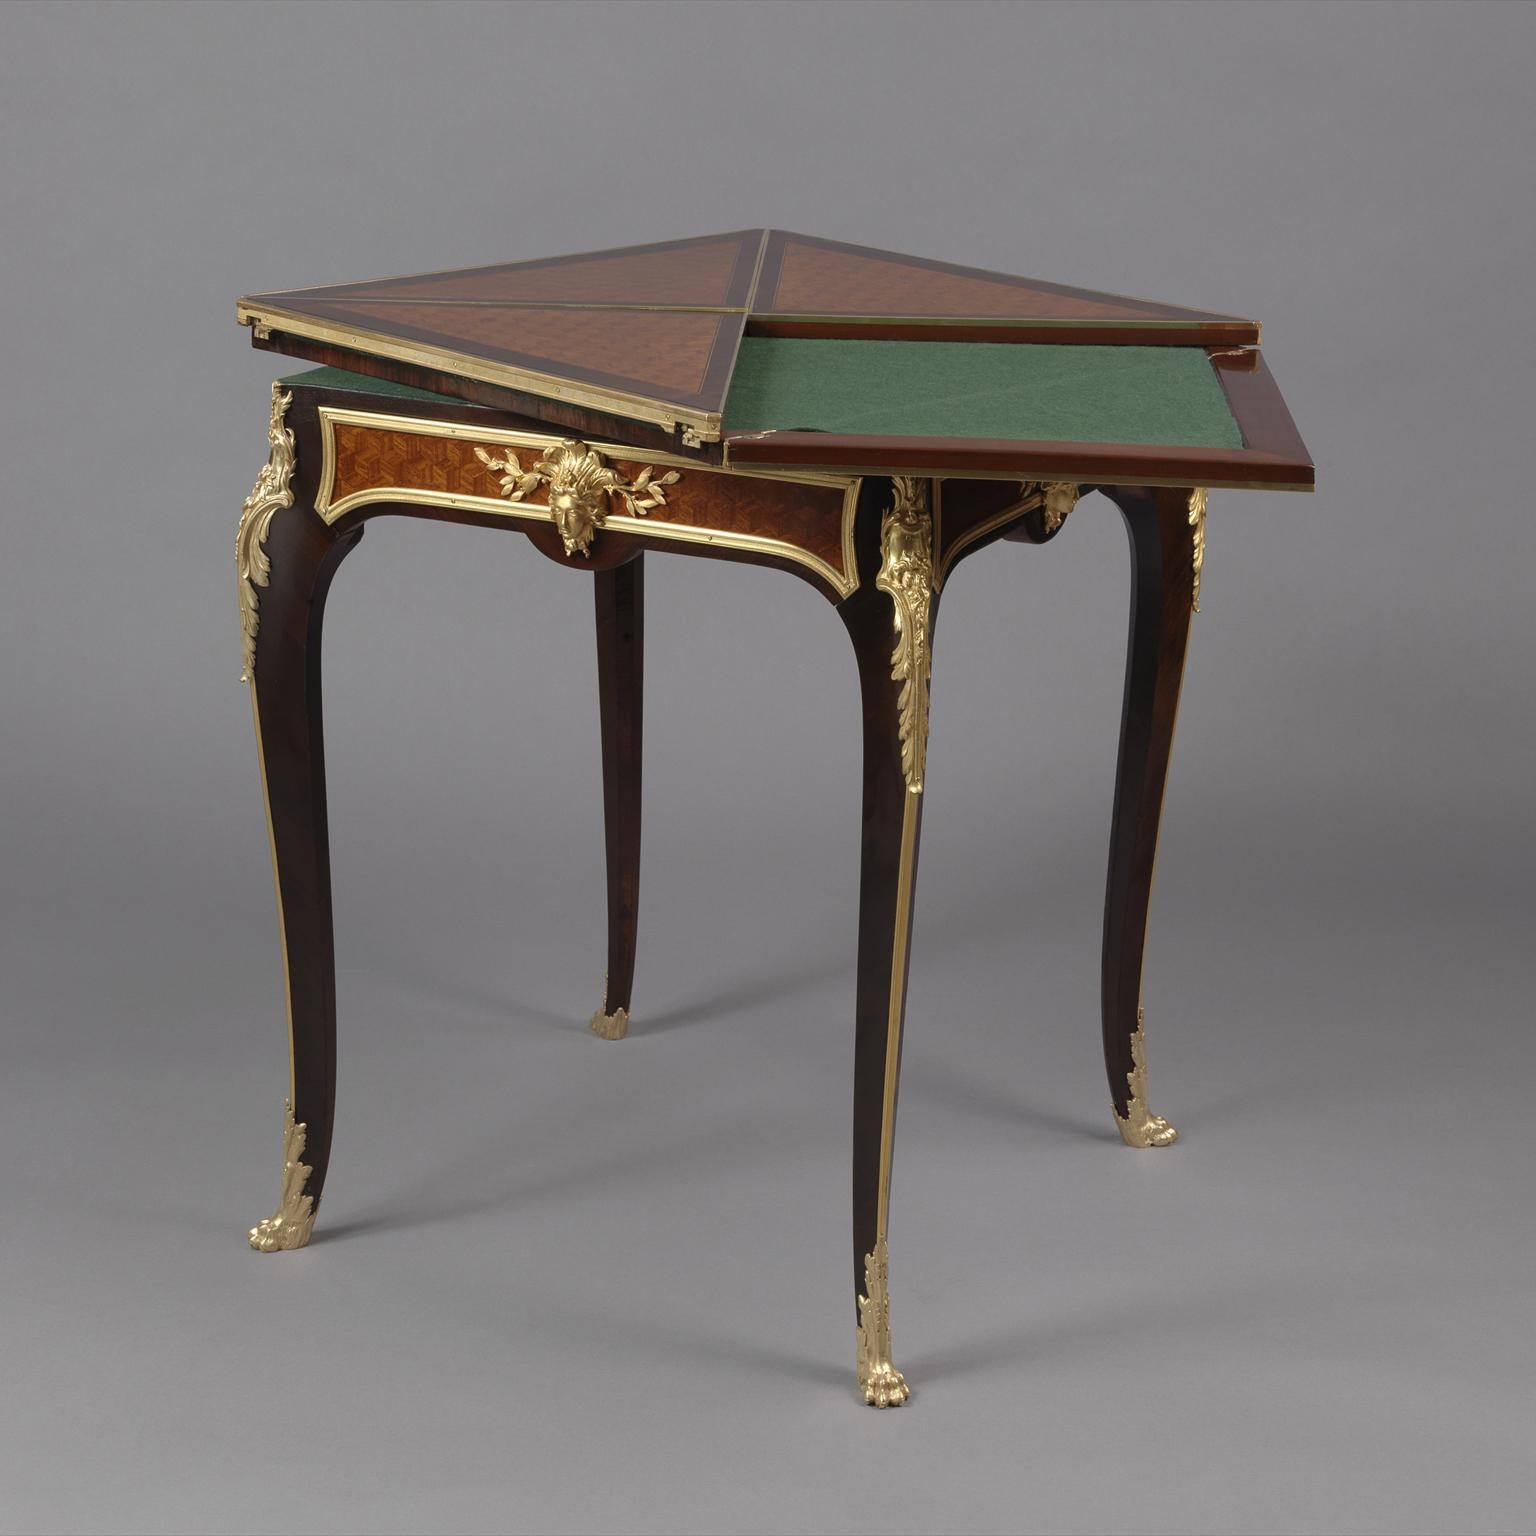 Table à enveloppe en parqueterie montée en bronze doré par François Linke.
 
Signé sur le bronze doré 